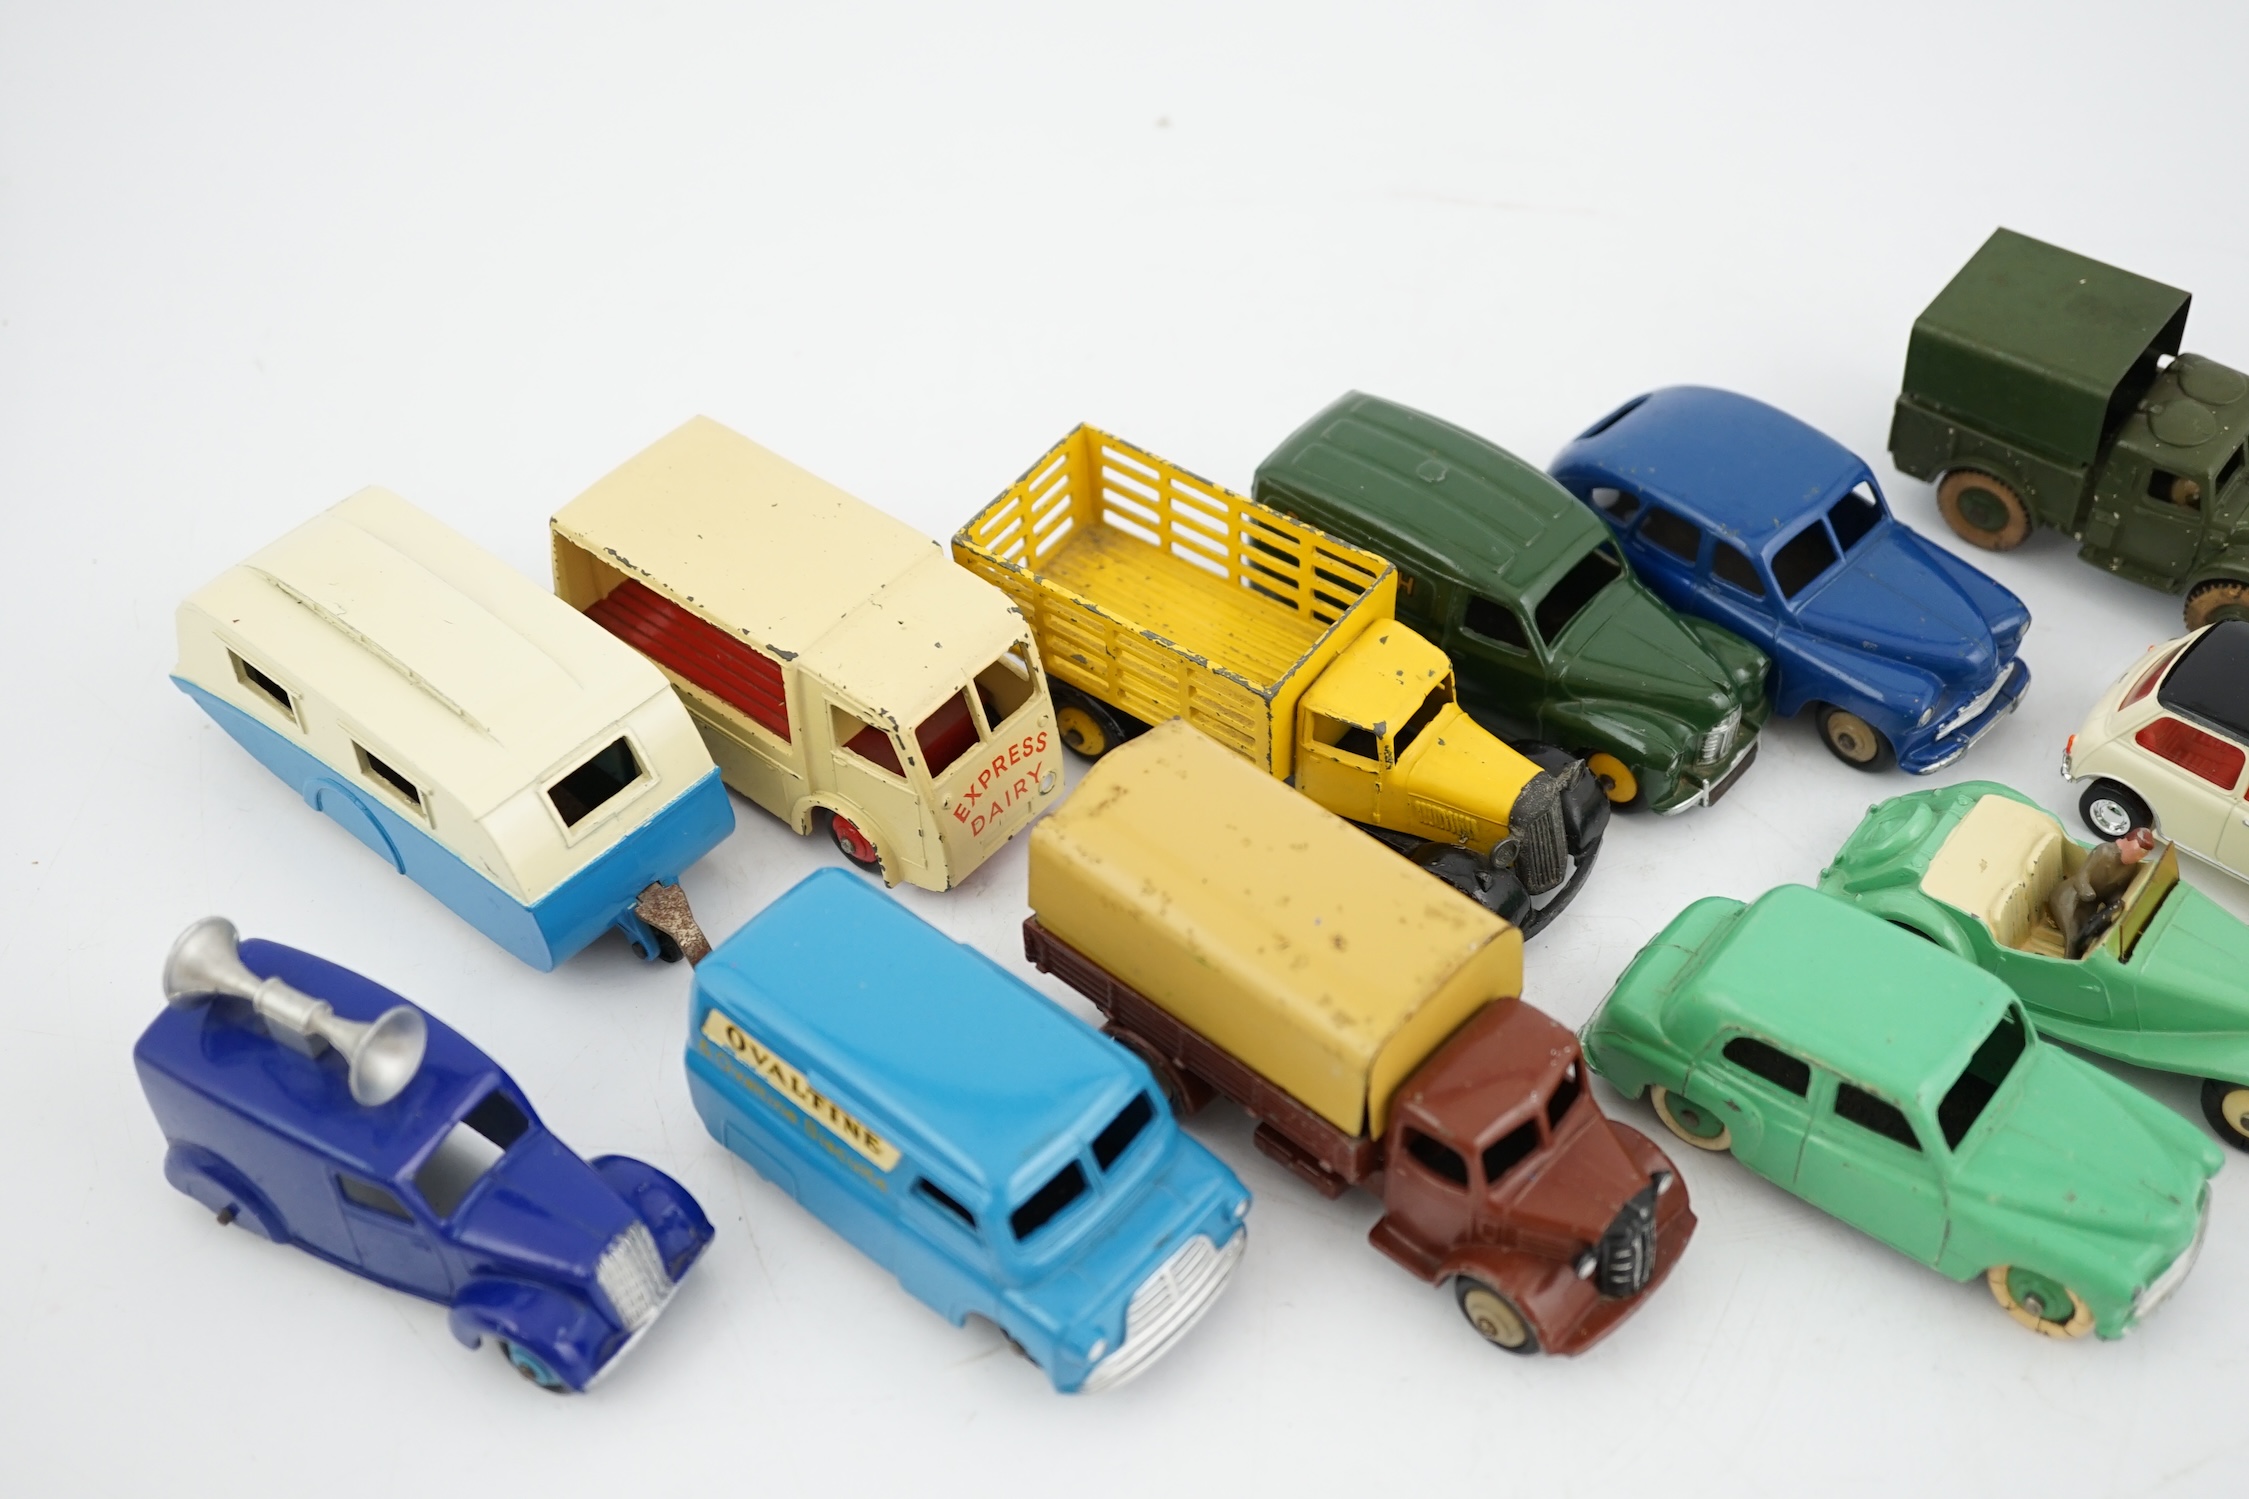 Twelve Dinky Toys, including; Austin van, Vanguard, Market Gardener’s wagon, Hillman Minx, MG Midget, Bedford van, etc.